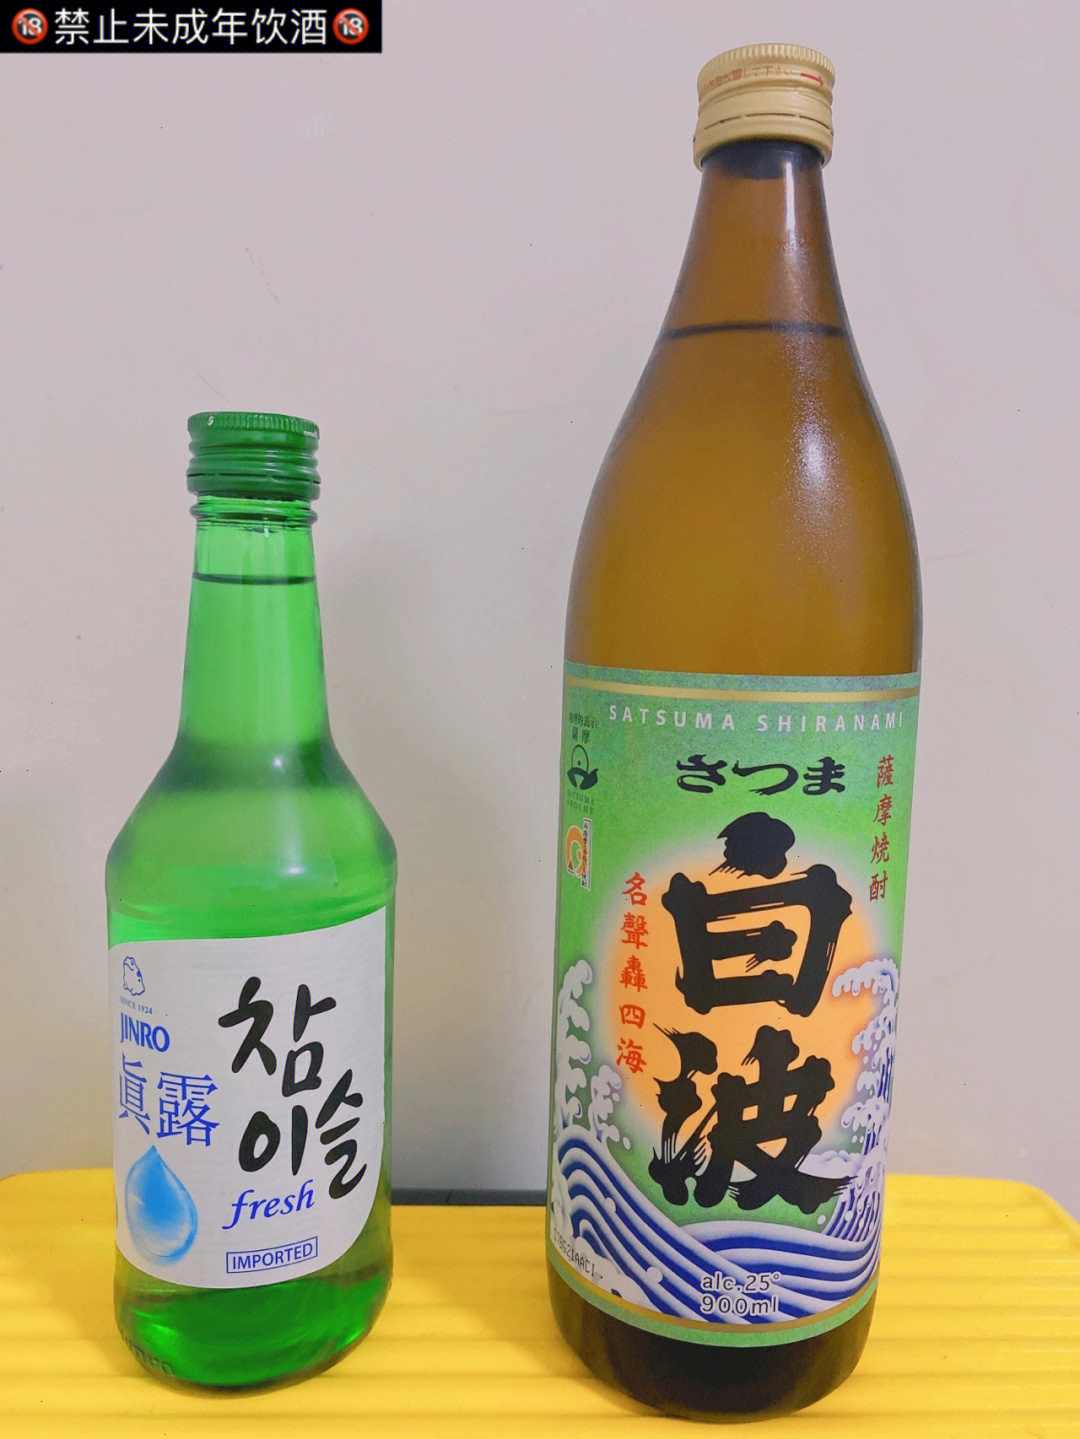 韩国烧酒:真露原味(竹炭fresh)日本烧酒:白波(芋烧酎 本格)01纯饮